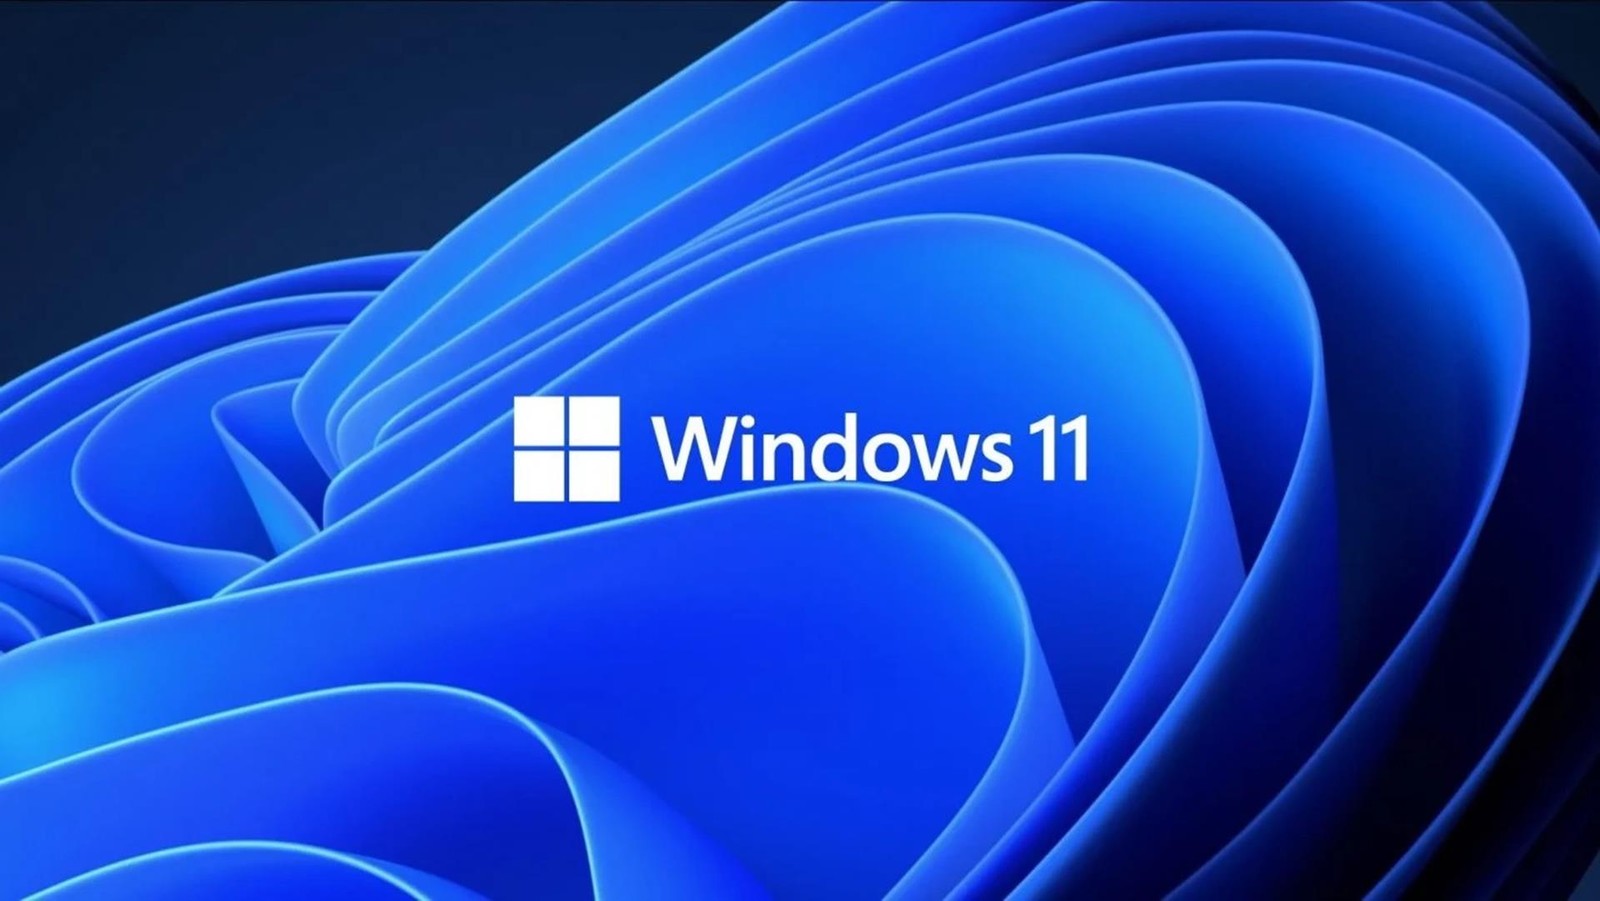 Darmowy Windows 11 dla każdego. Prosty trik wystarczy, żeby zdobyć klucz Windows 11 lub Windows 10 za darmo